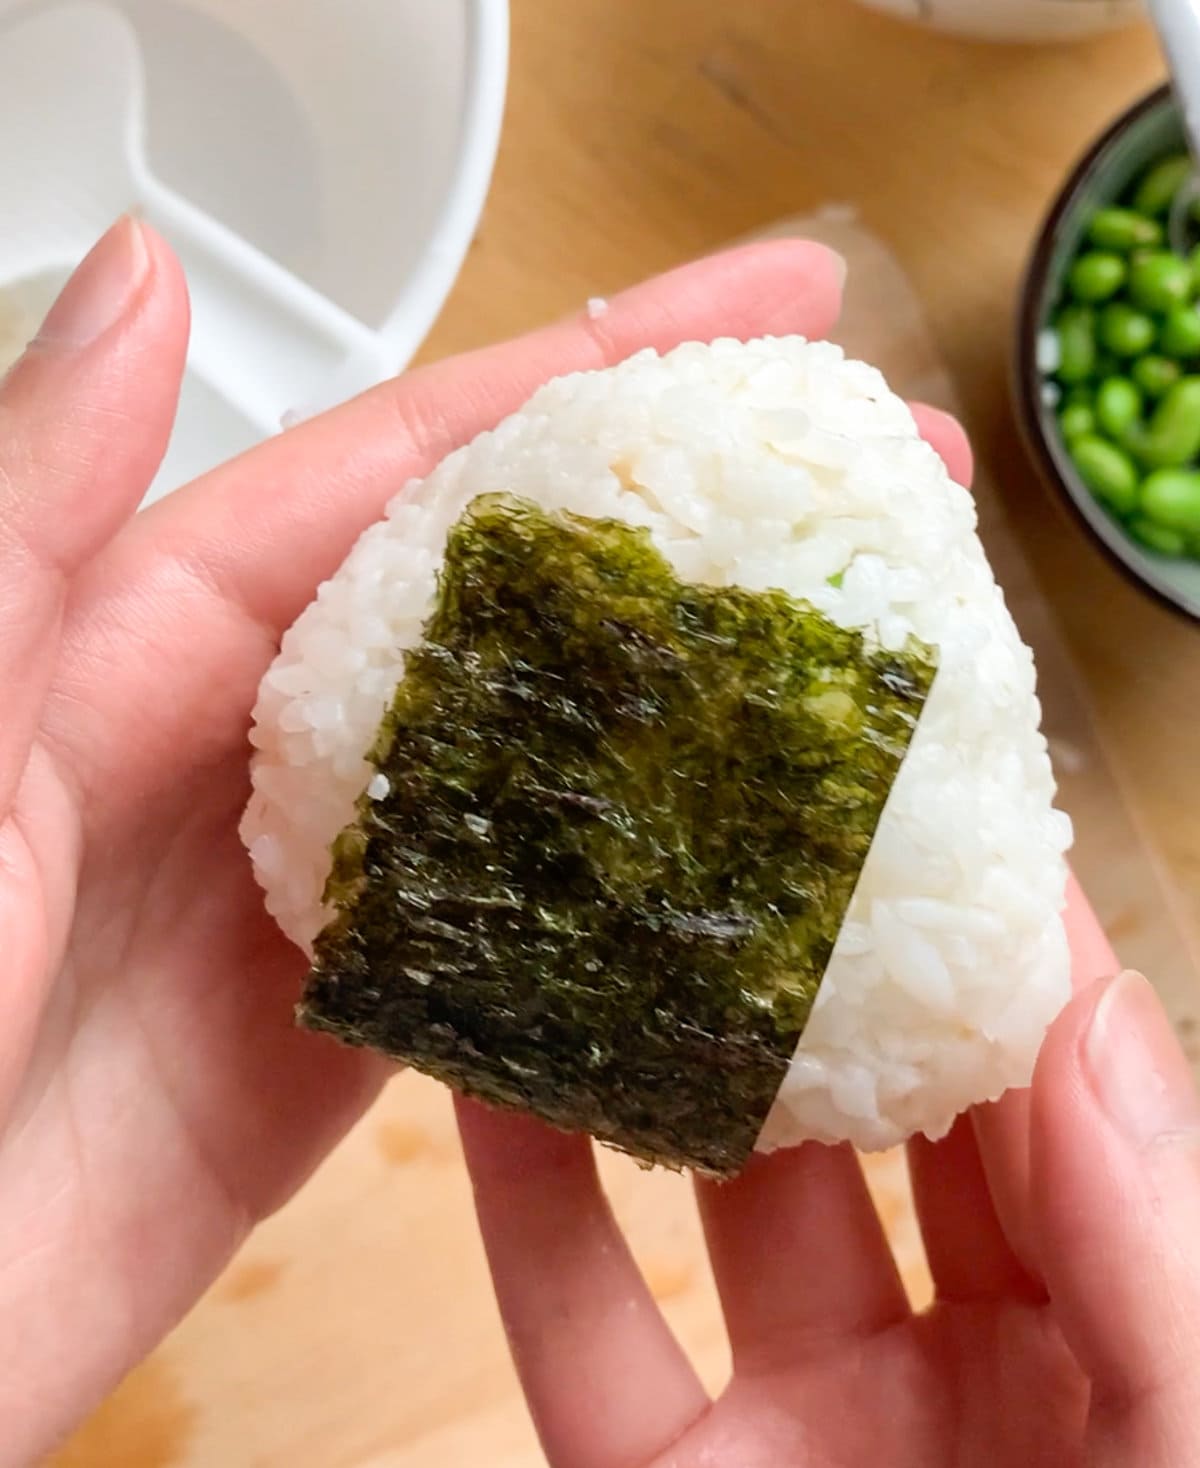 Wrap with nori seaweed